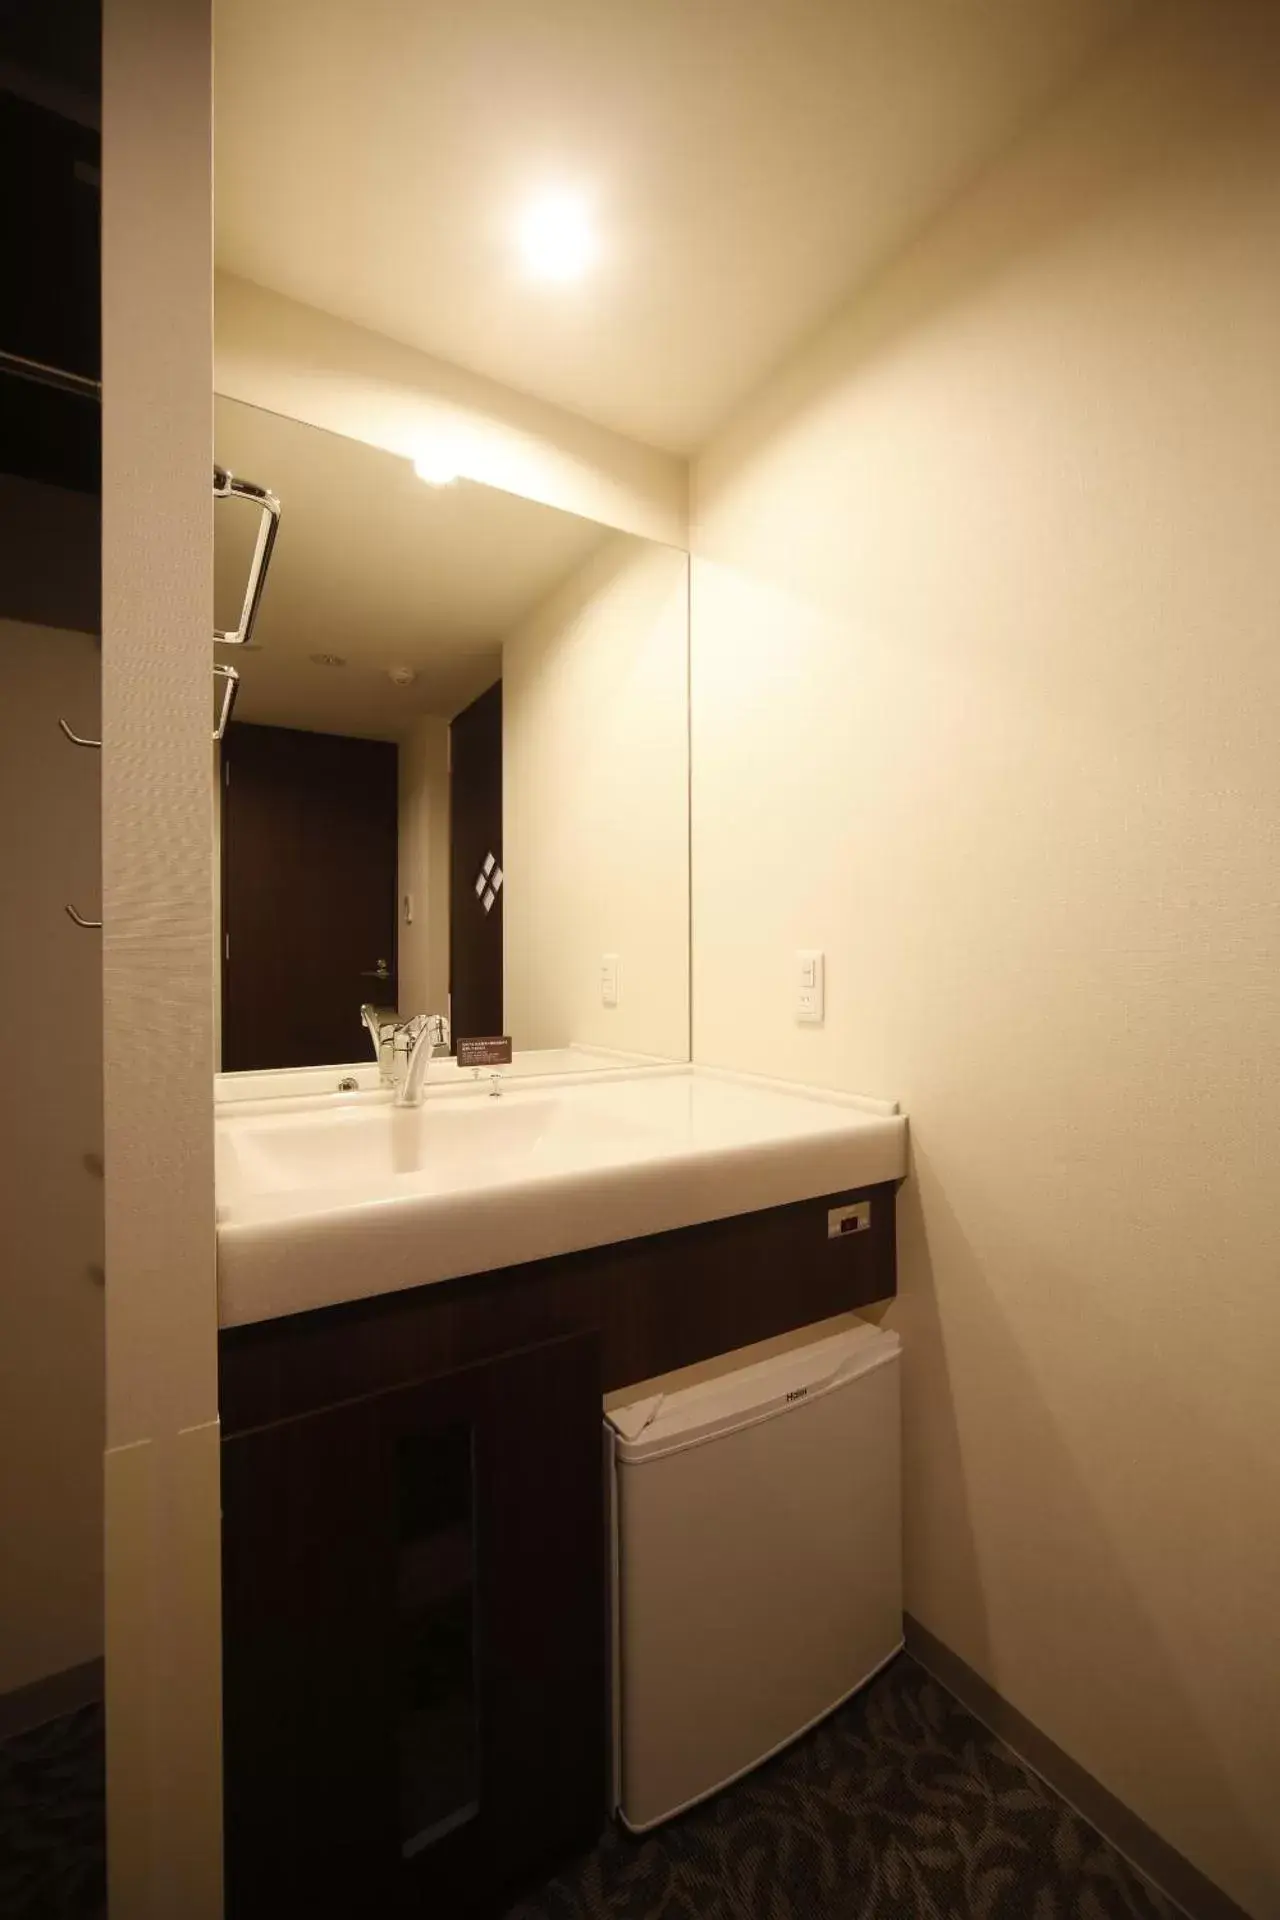 Area and facilities, Bathroom in Dormy Inn Kofu Marunouchi